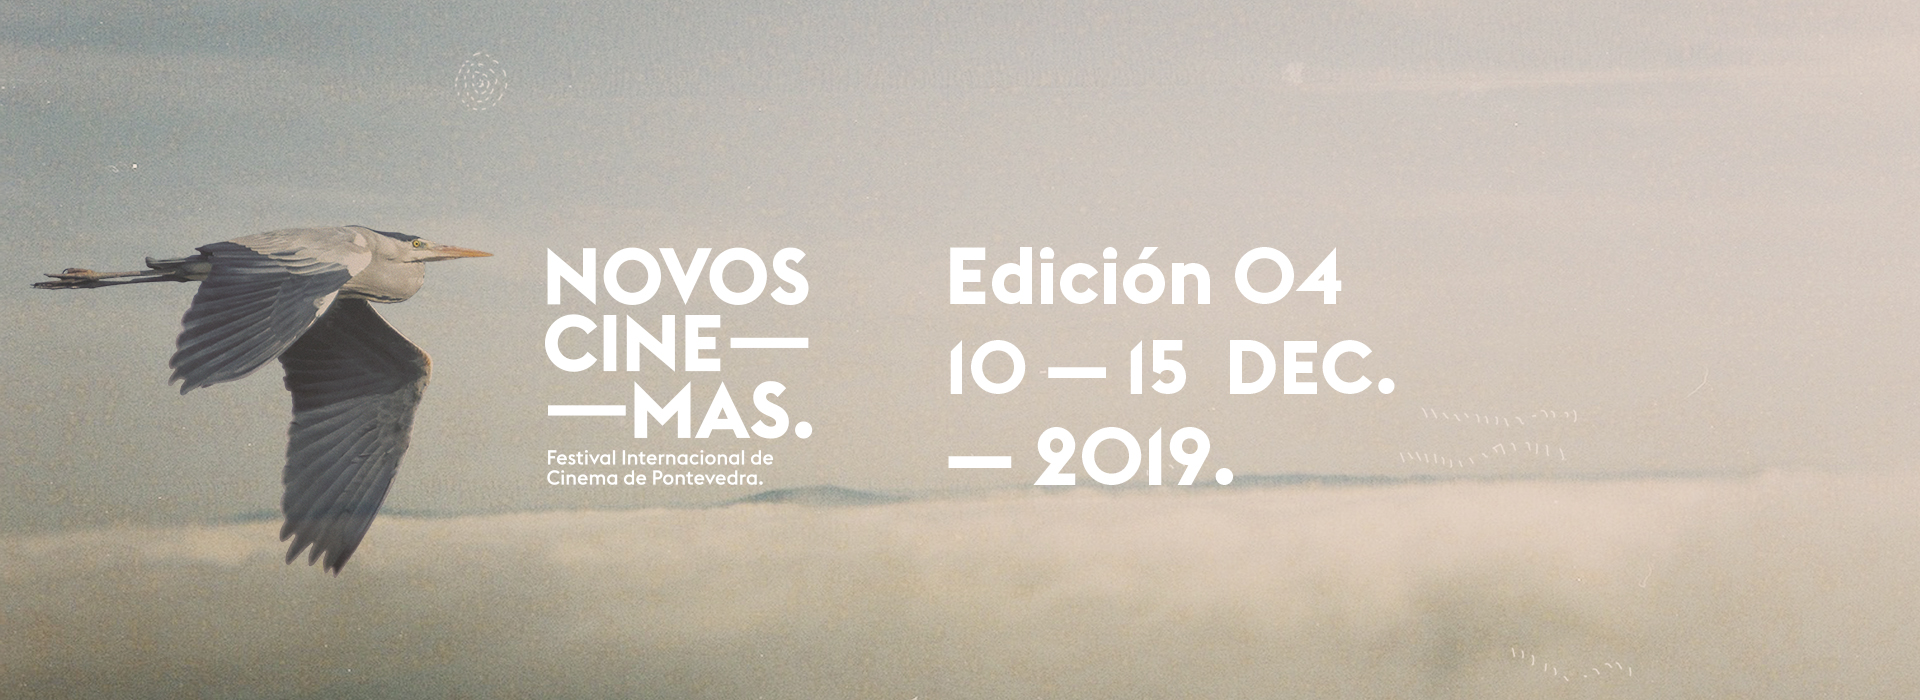 NOVOS CINEMAS 2019